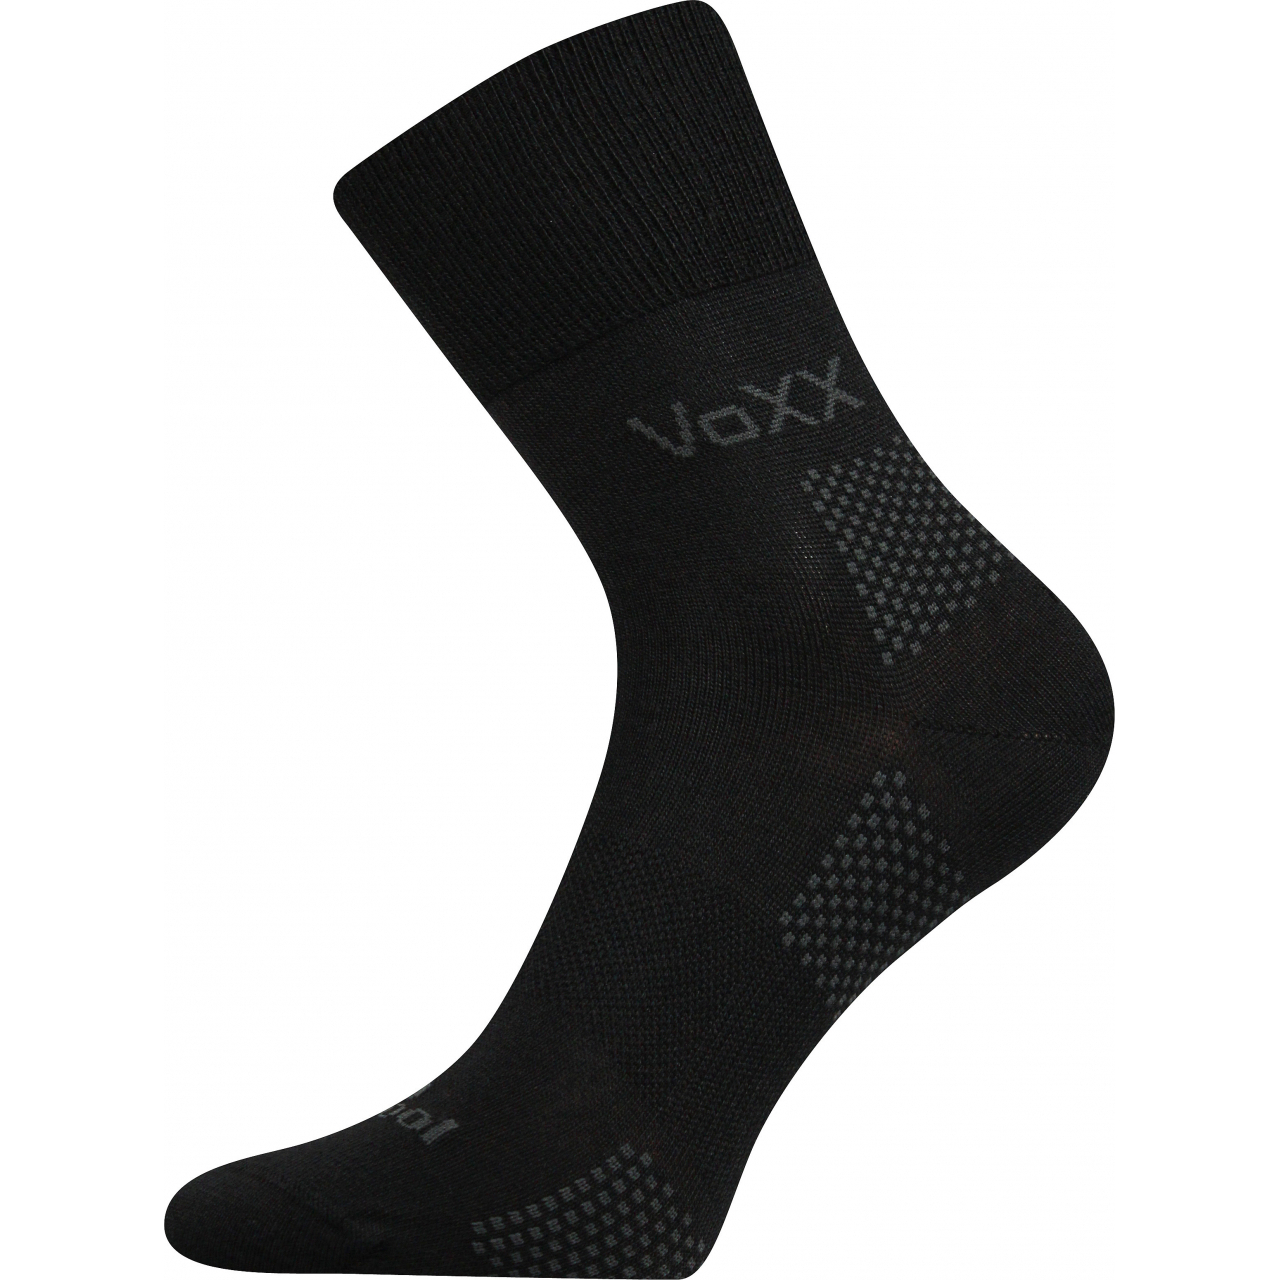 Ponožky funkční unisex Voxx Orionis ThermoCool - černé, 35-38